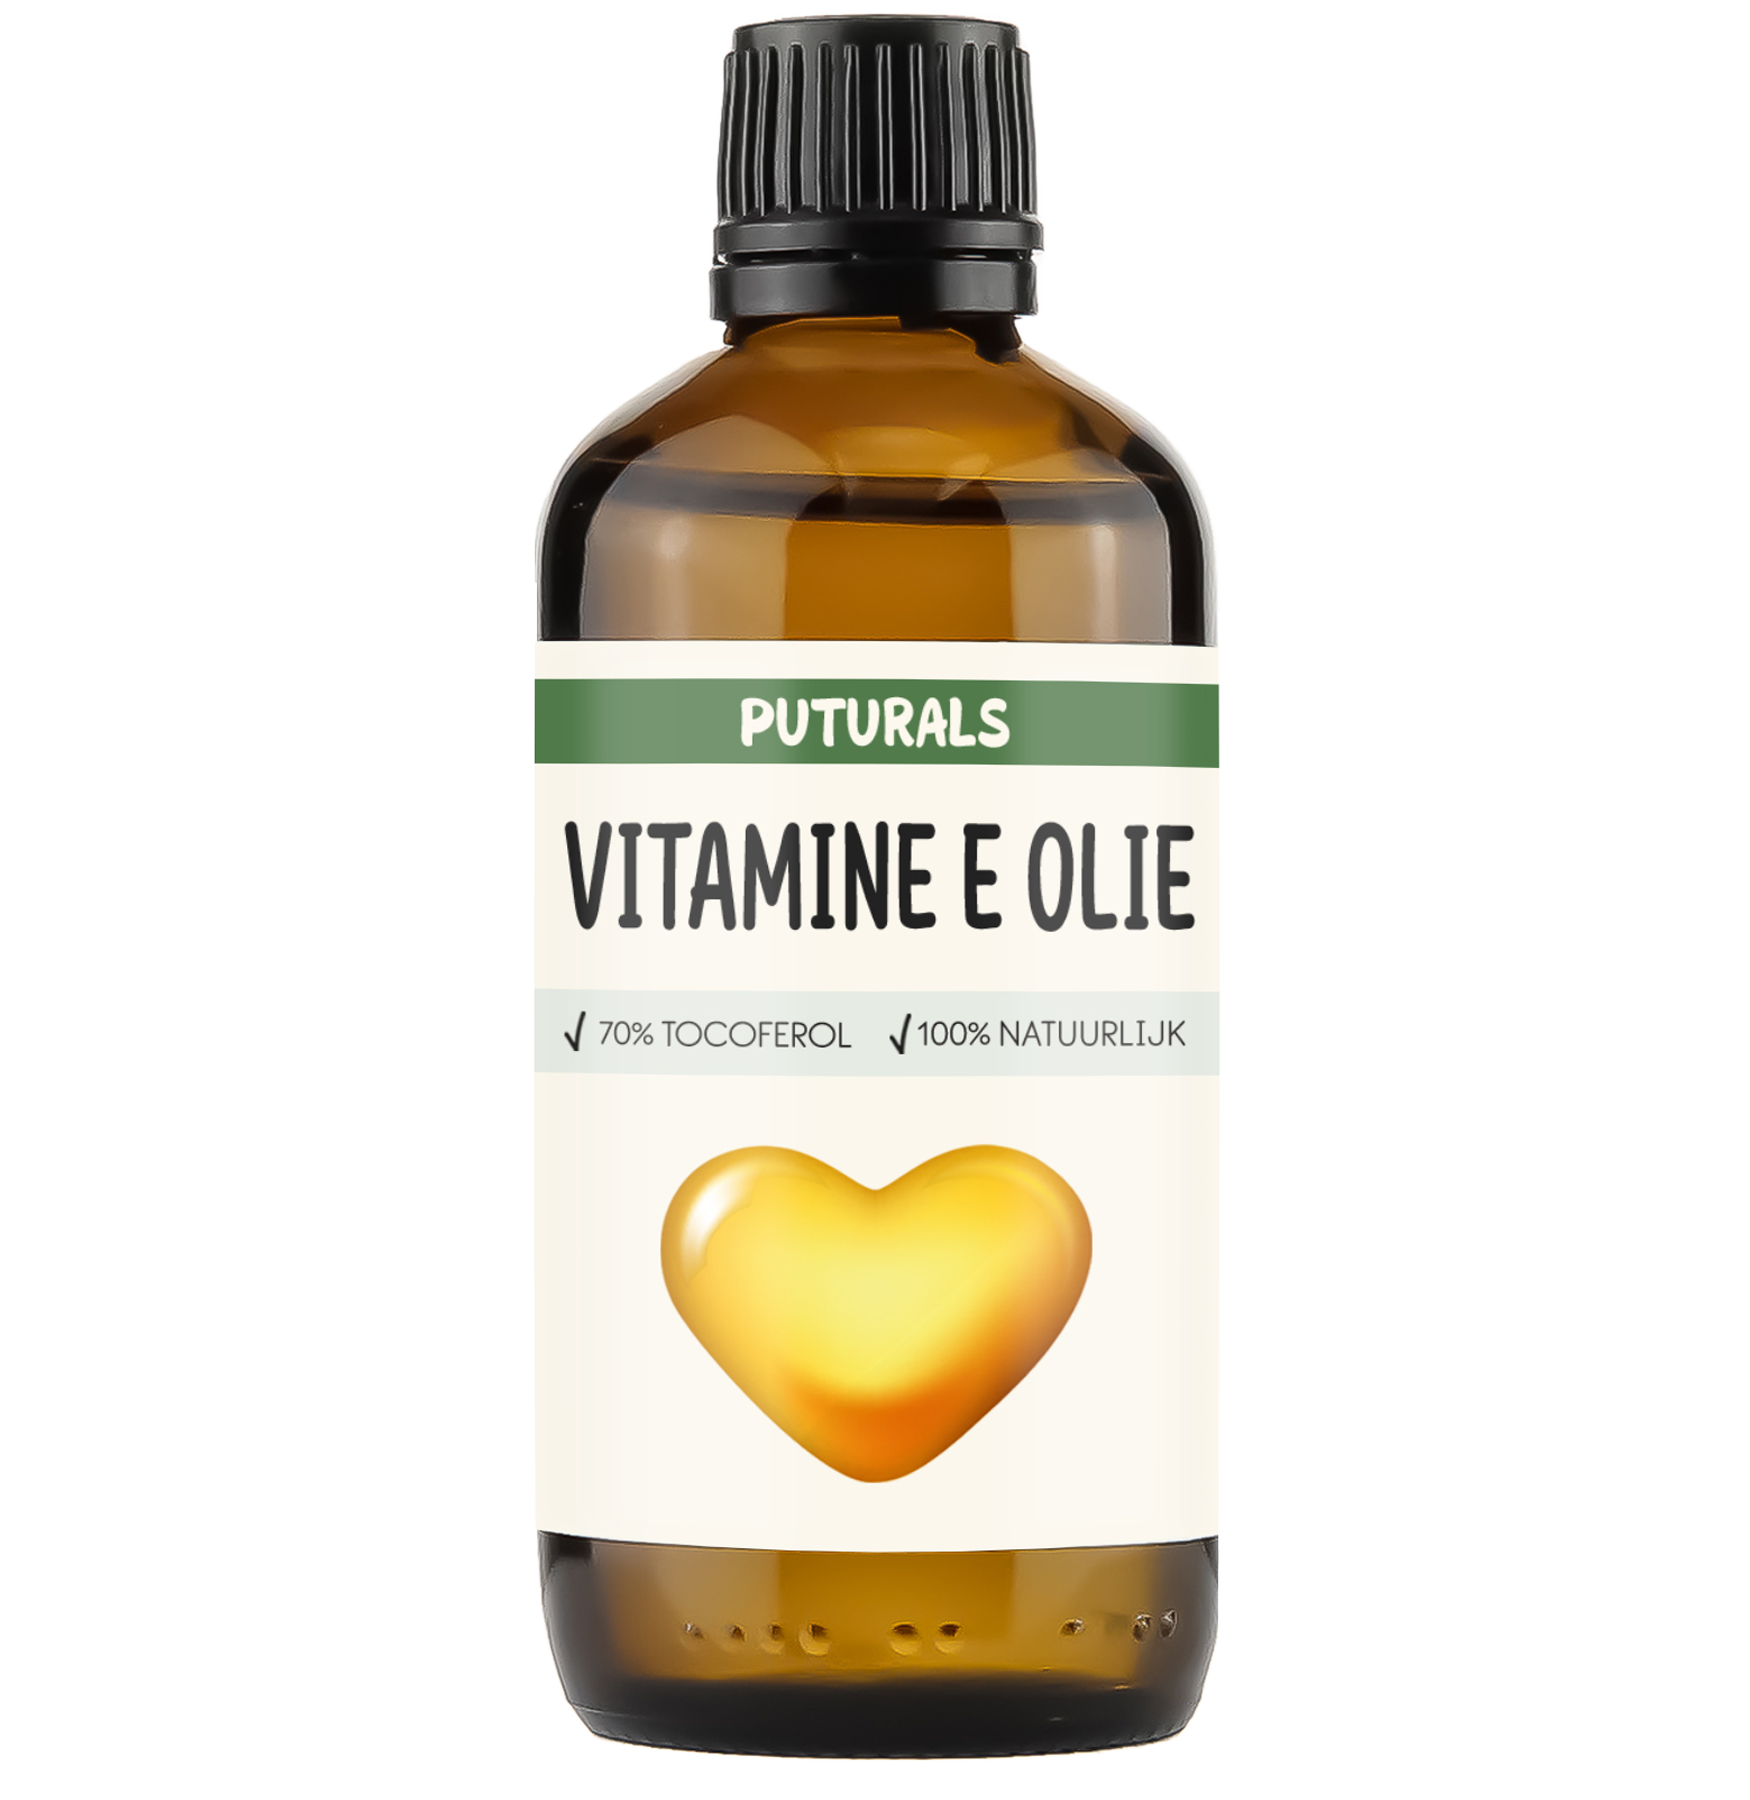 Puturals Vitamine E olie 100% Natuurlijk en 70% Tocoferol